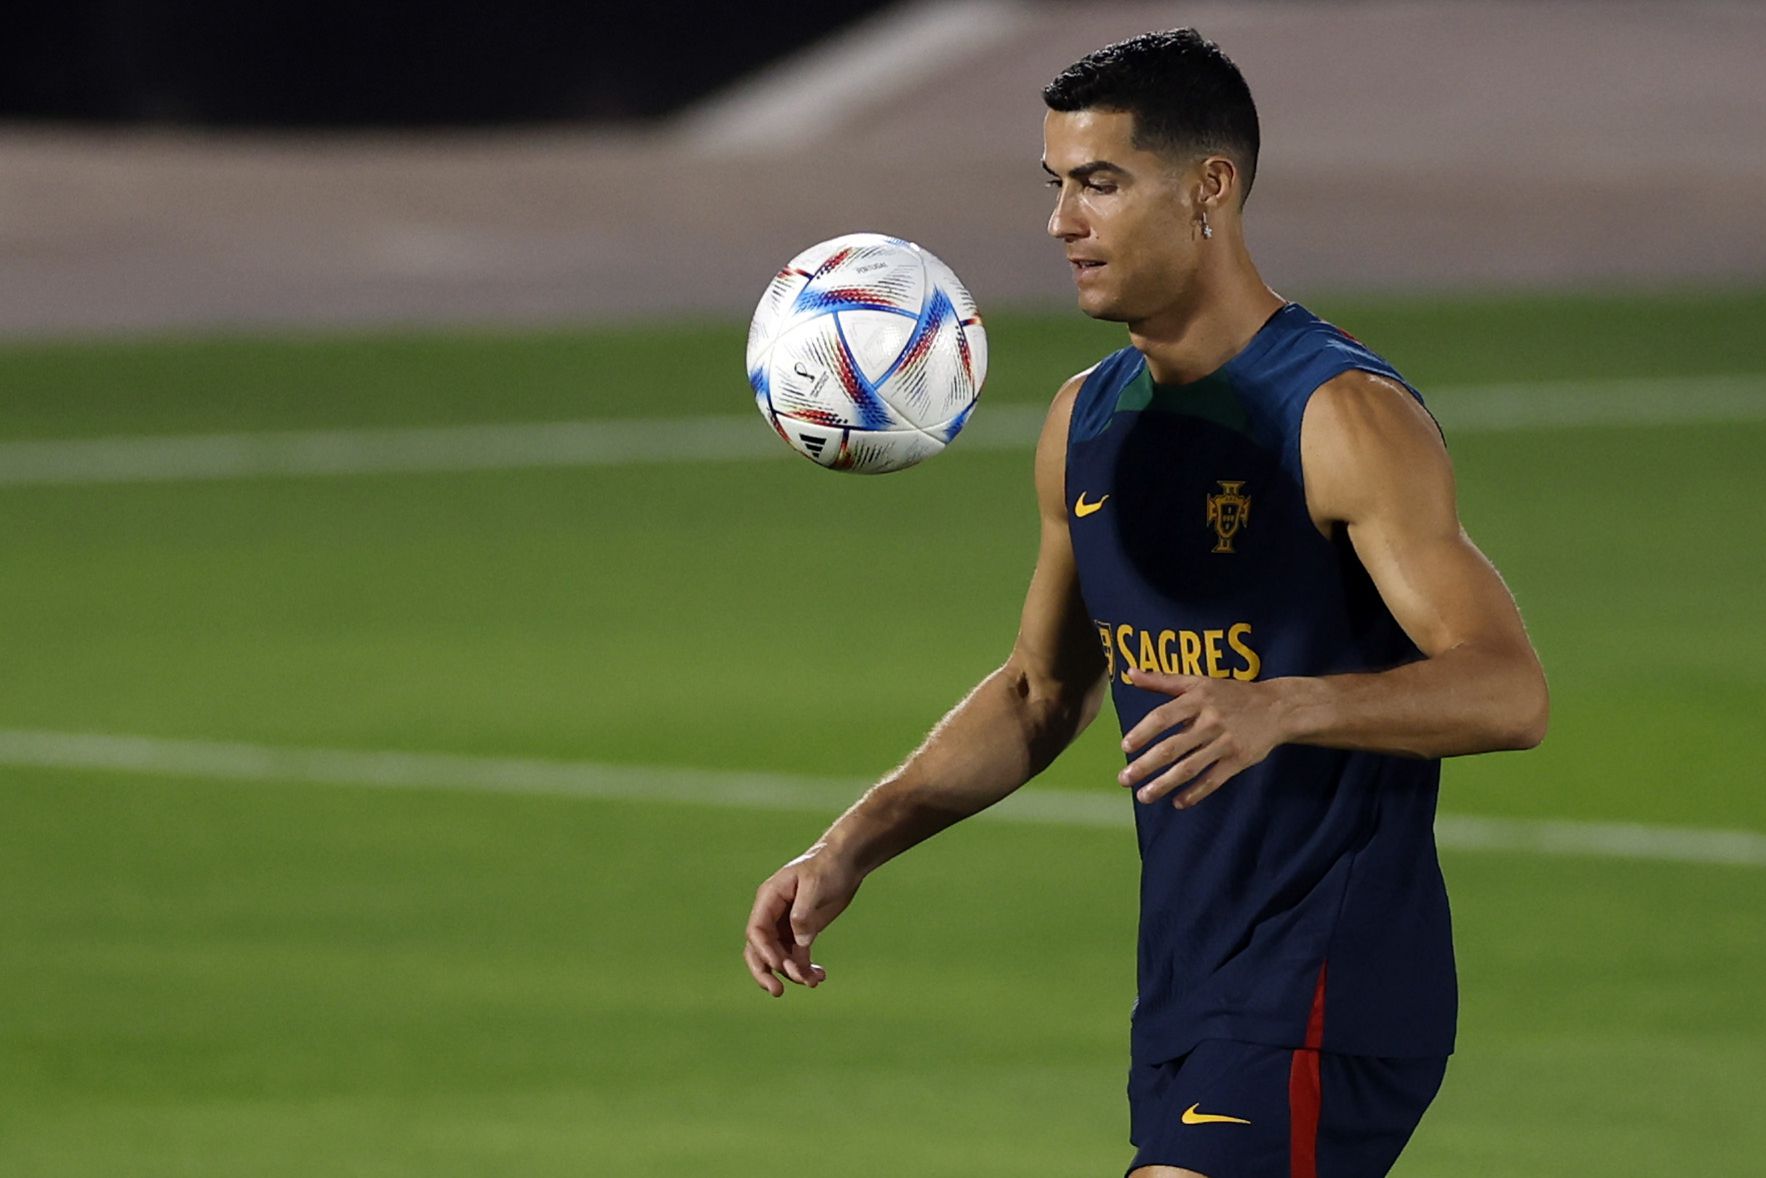 el PSG “imposible” contratar a Cristiano Ronaldo | Fútbol | Deportes | El Universo